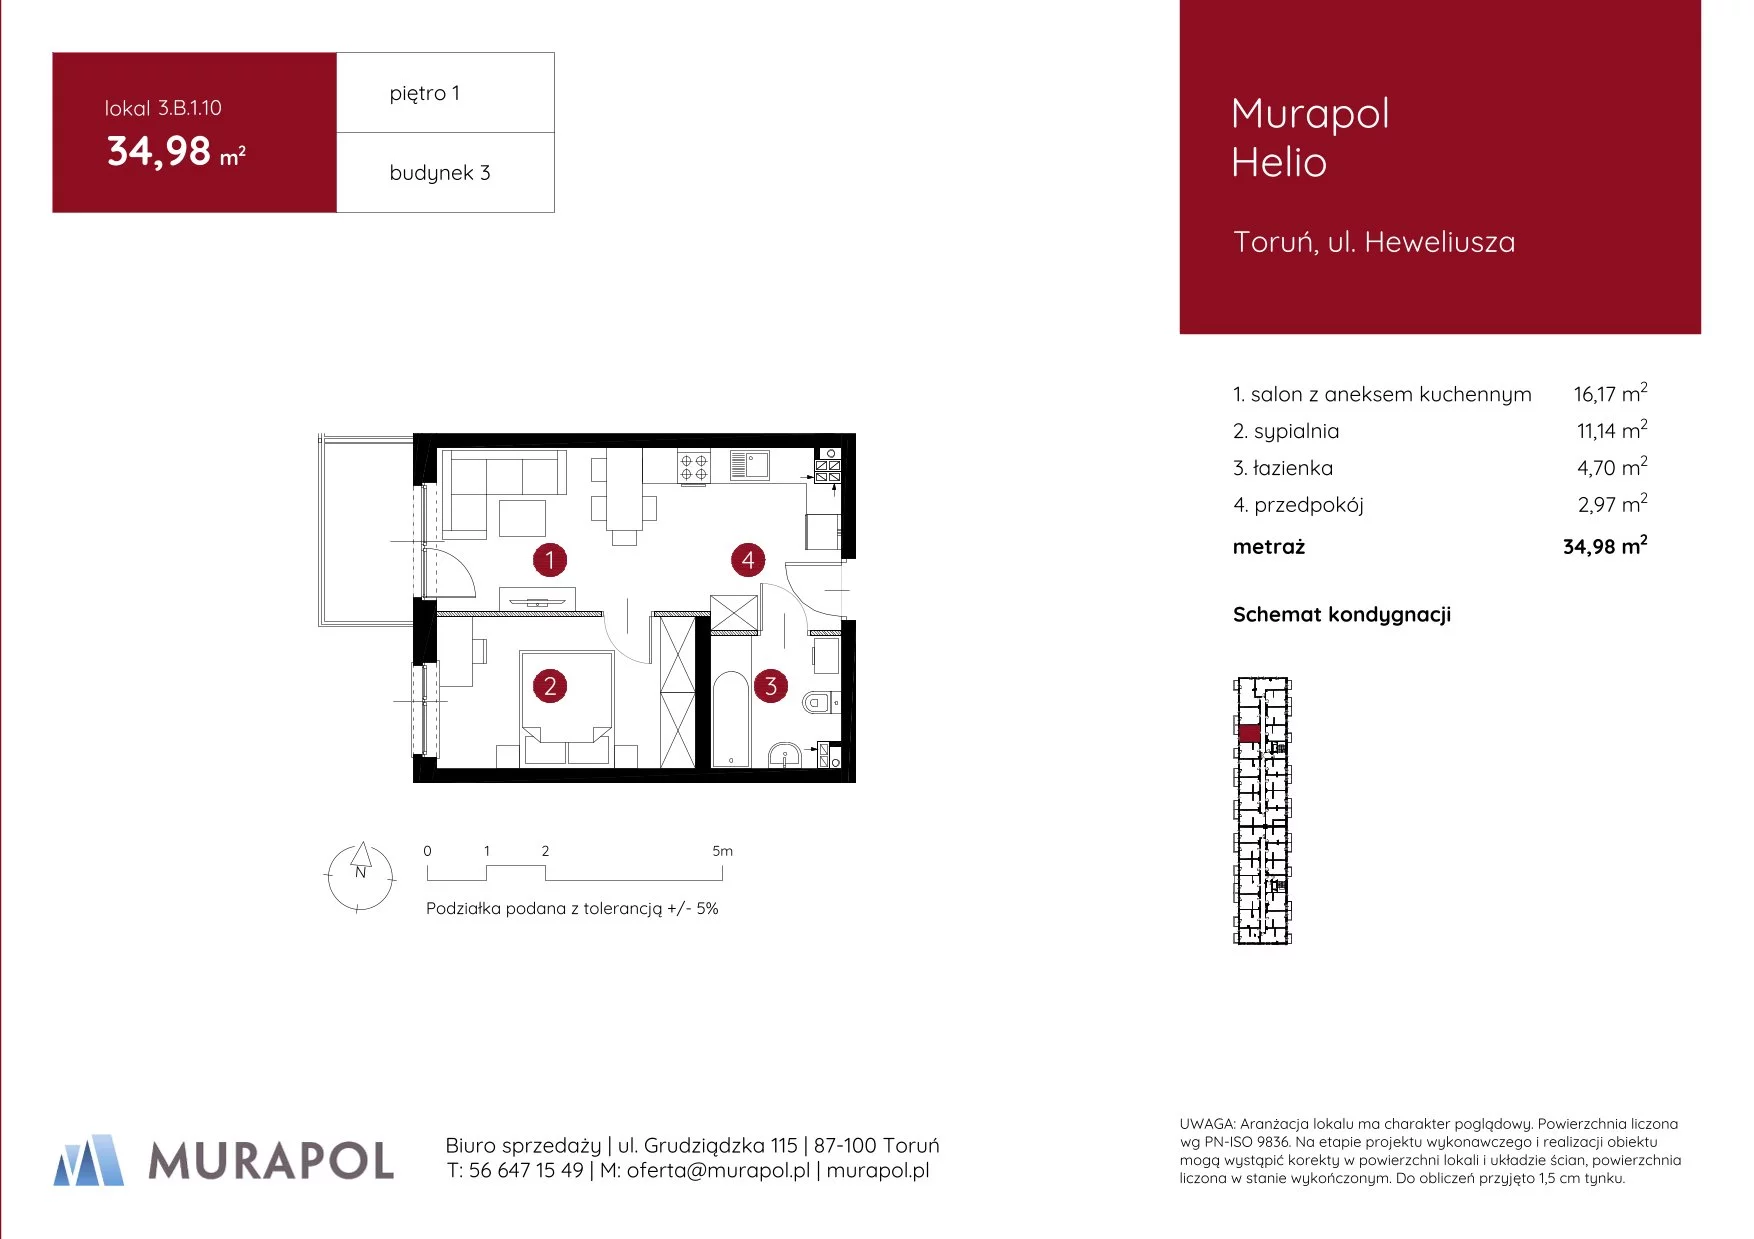 Mieszkanie 34,98 m², piętro 1, oferta nr 3.B.1.10, Murapol Helio, Toruń, Wrzosy, JAR, ul. Heweliusza